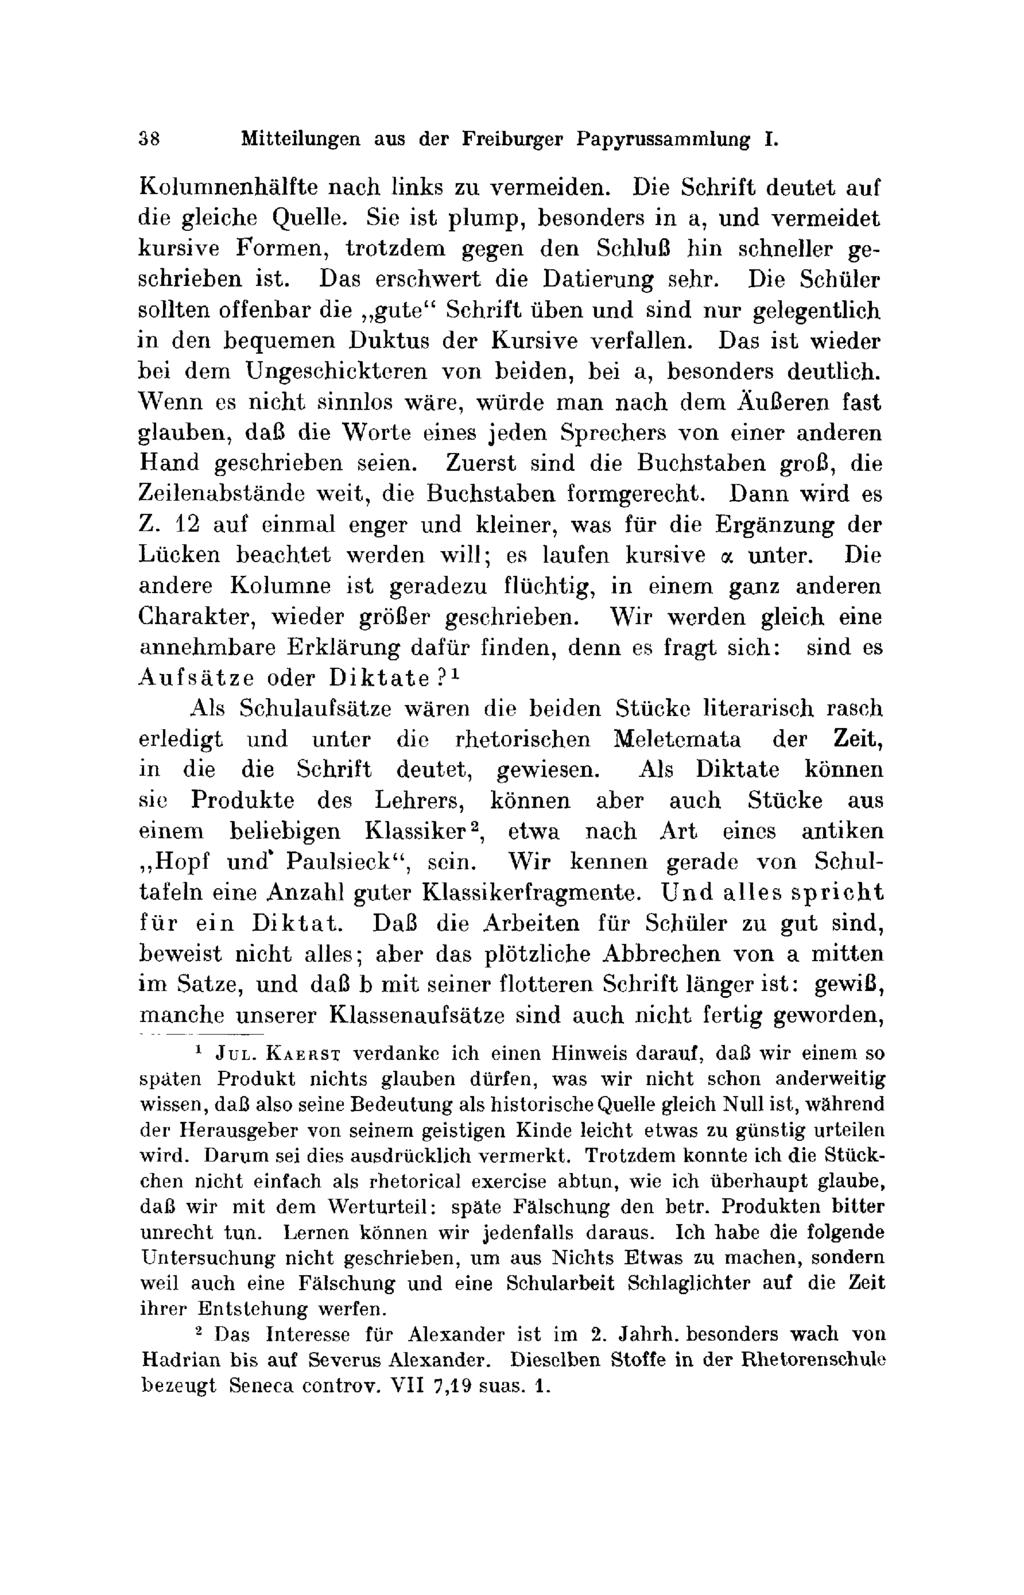 38 Mitteilungen aus der Freiburger Ρ ρ τι'υssαmmlung I. Κοlumnenhälfte nach links zu vermeiden. Die Schrift deutet auf die gleiche Quelle.